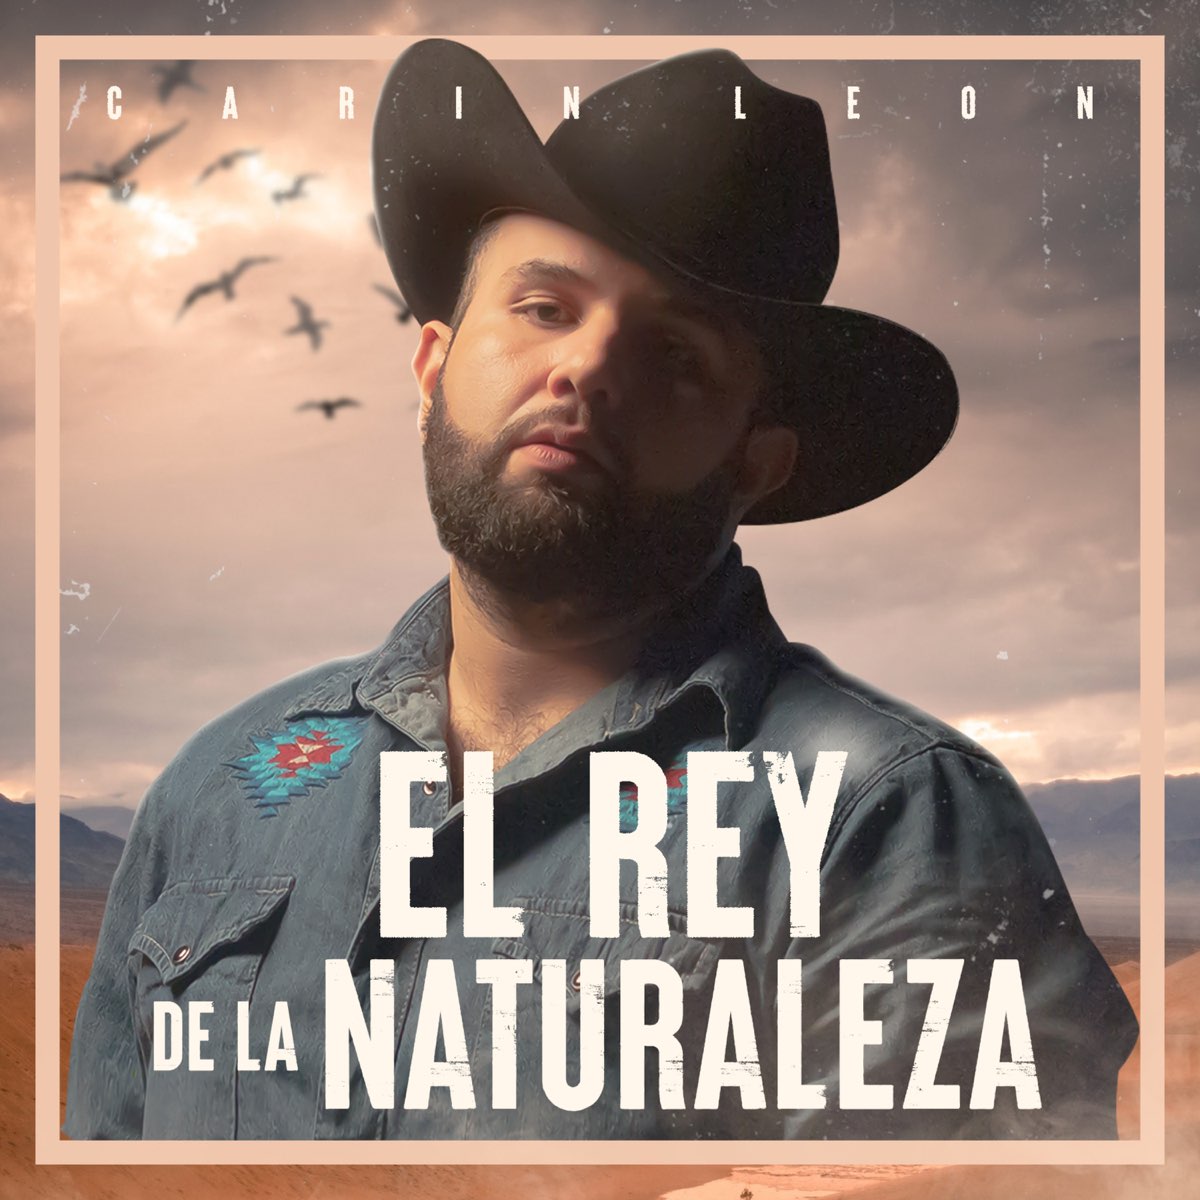 listen, El Rey de la Naturaleza (En Vivo) - Single, Carin Leon, music, sing...